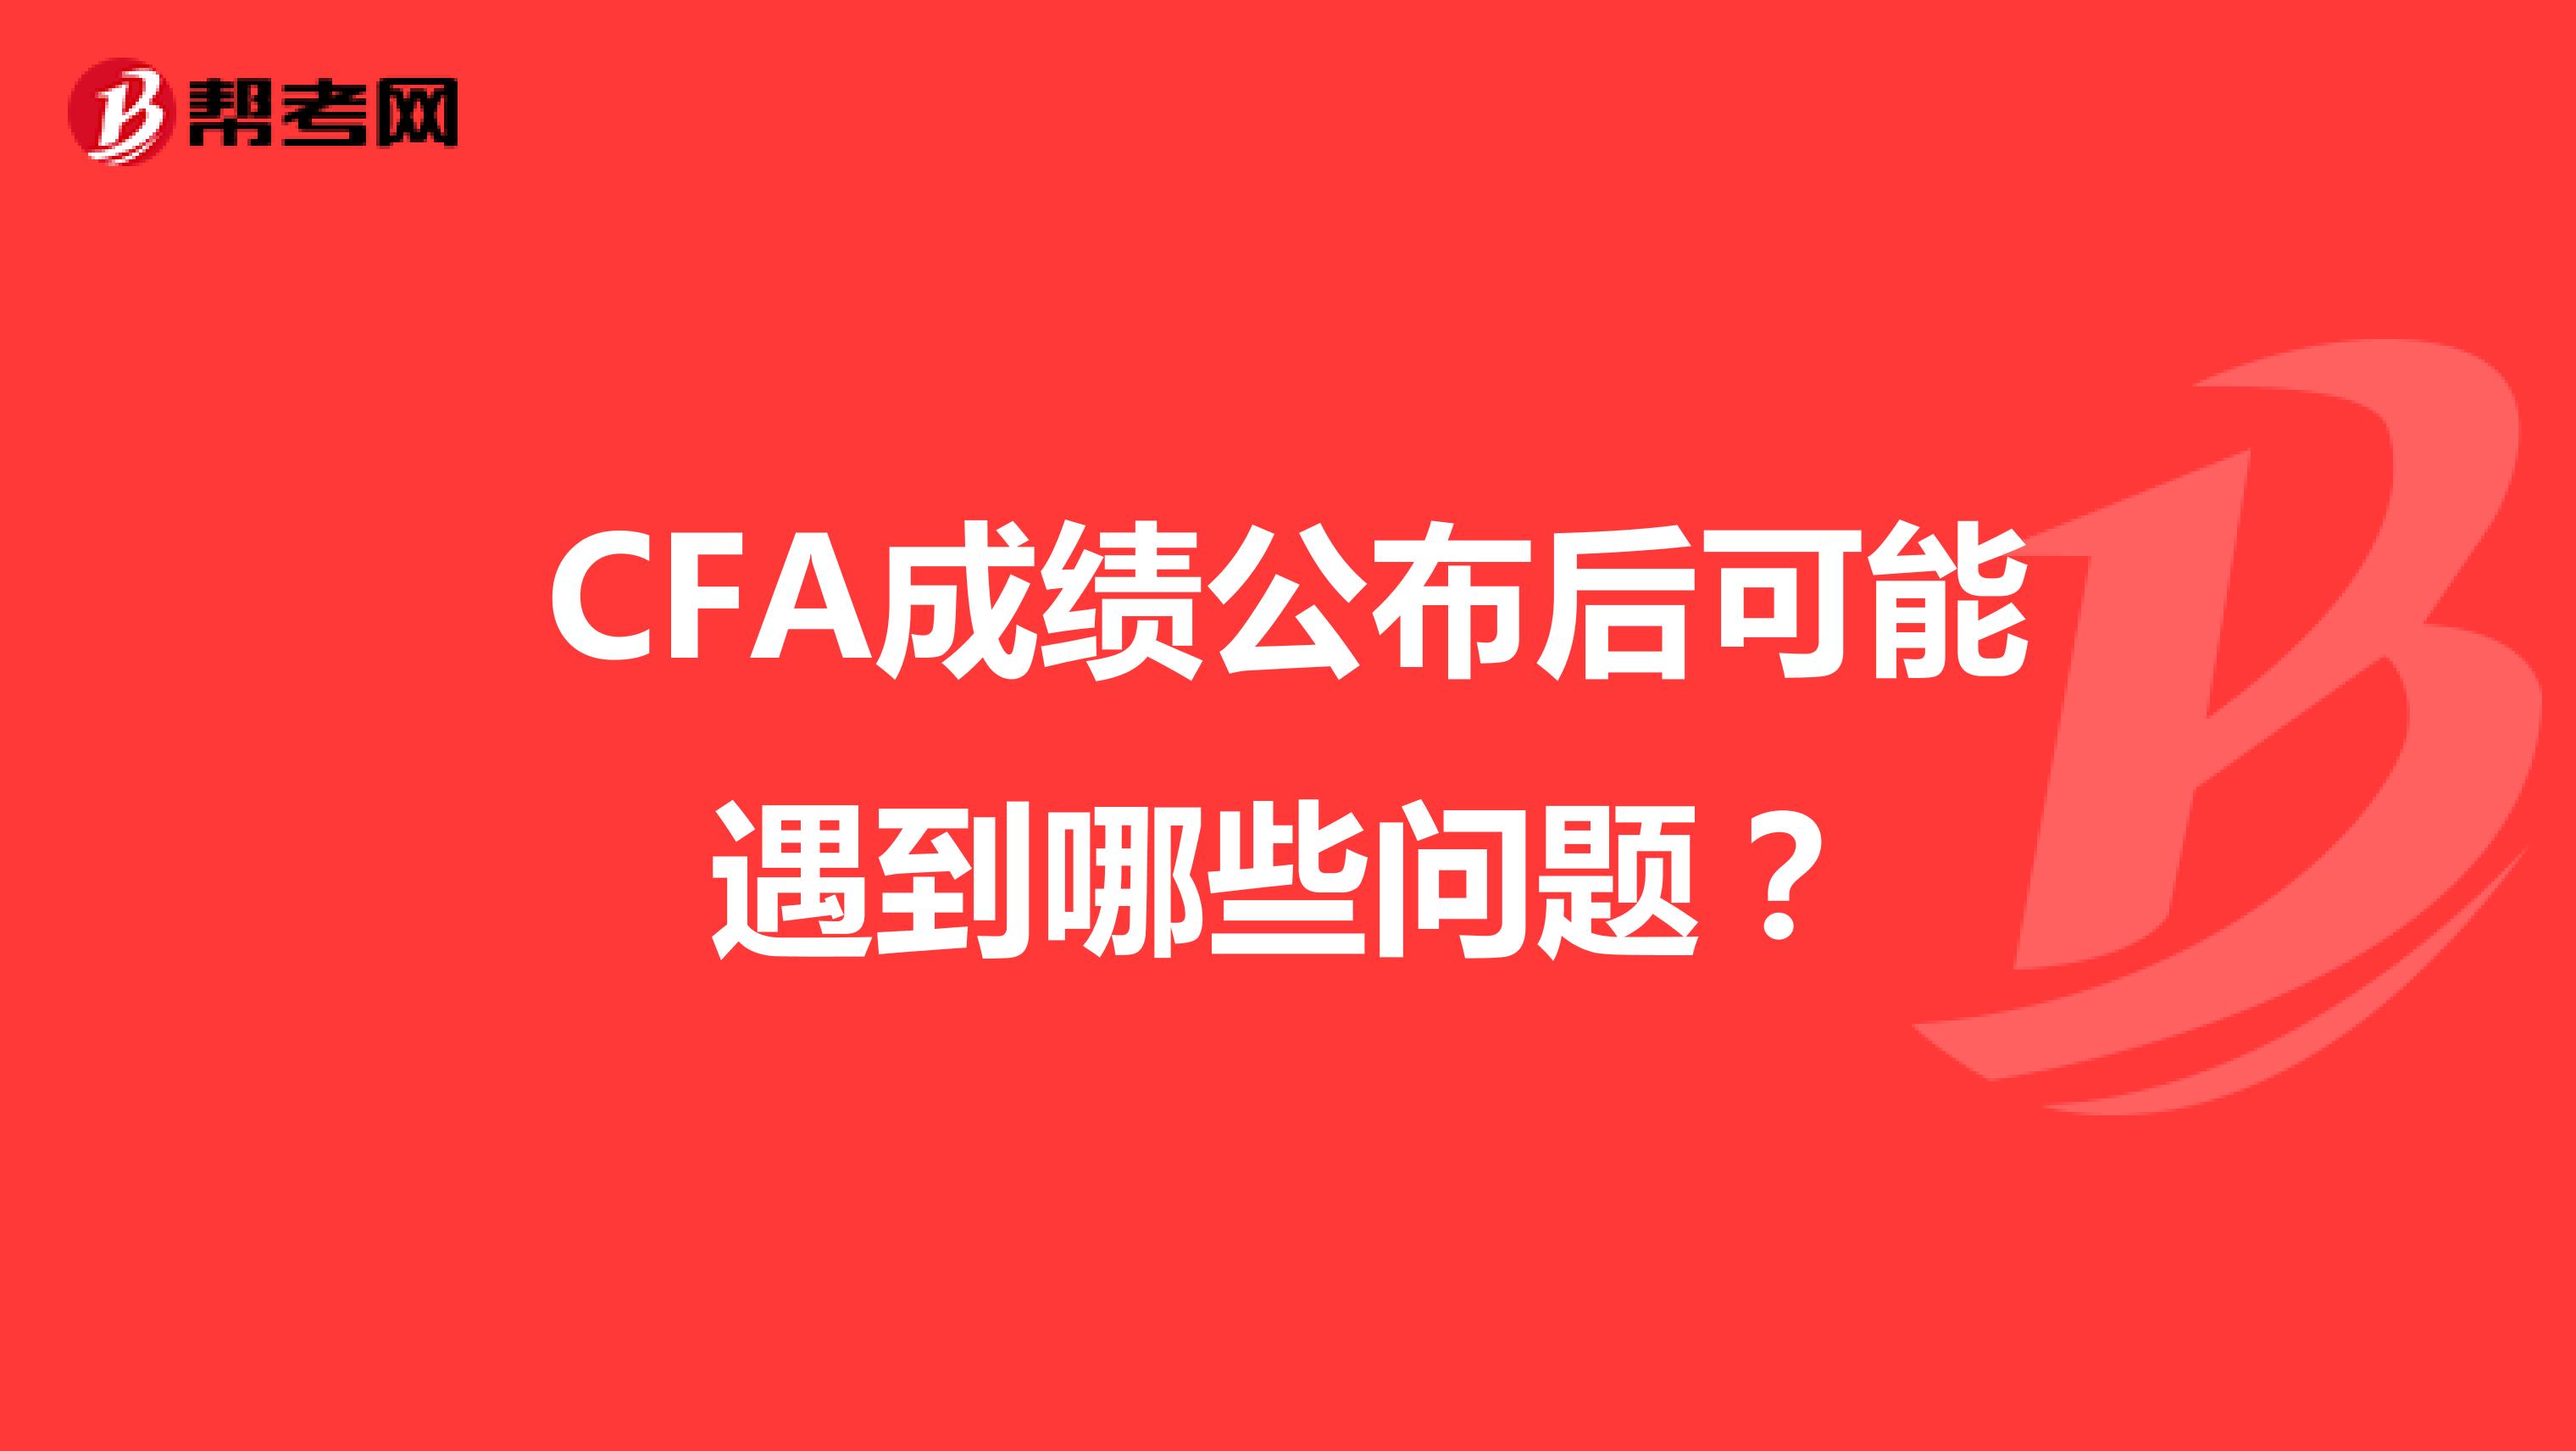 CFA成绩公布后可能遇到哪些问题？